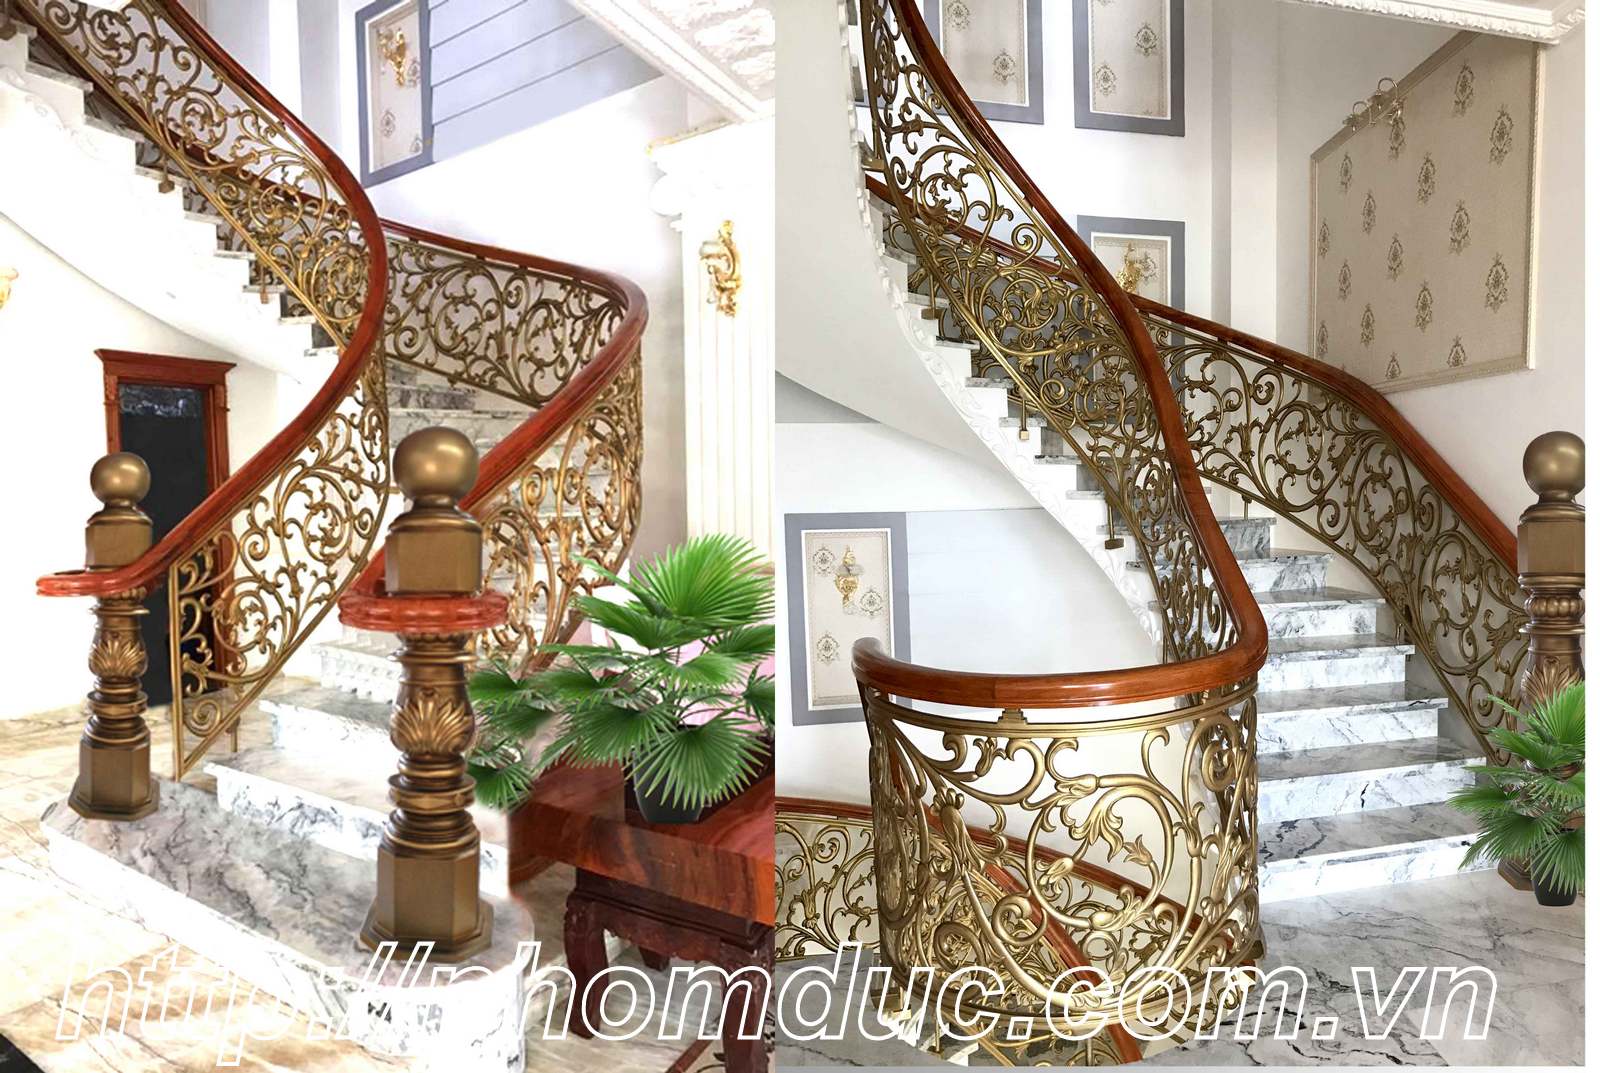 Cầu thang nhôm đúc, cầu thang nhôm đúc thay thế cho các sản phẩm cầu thang khác, các loại cầu thang thẳng, cầu thang